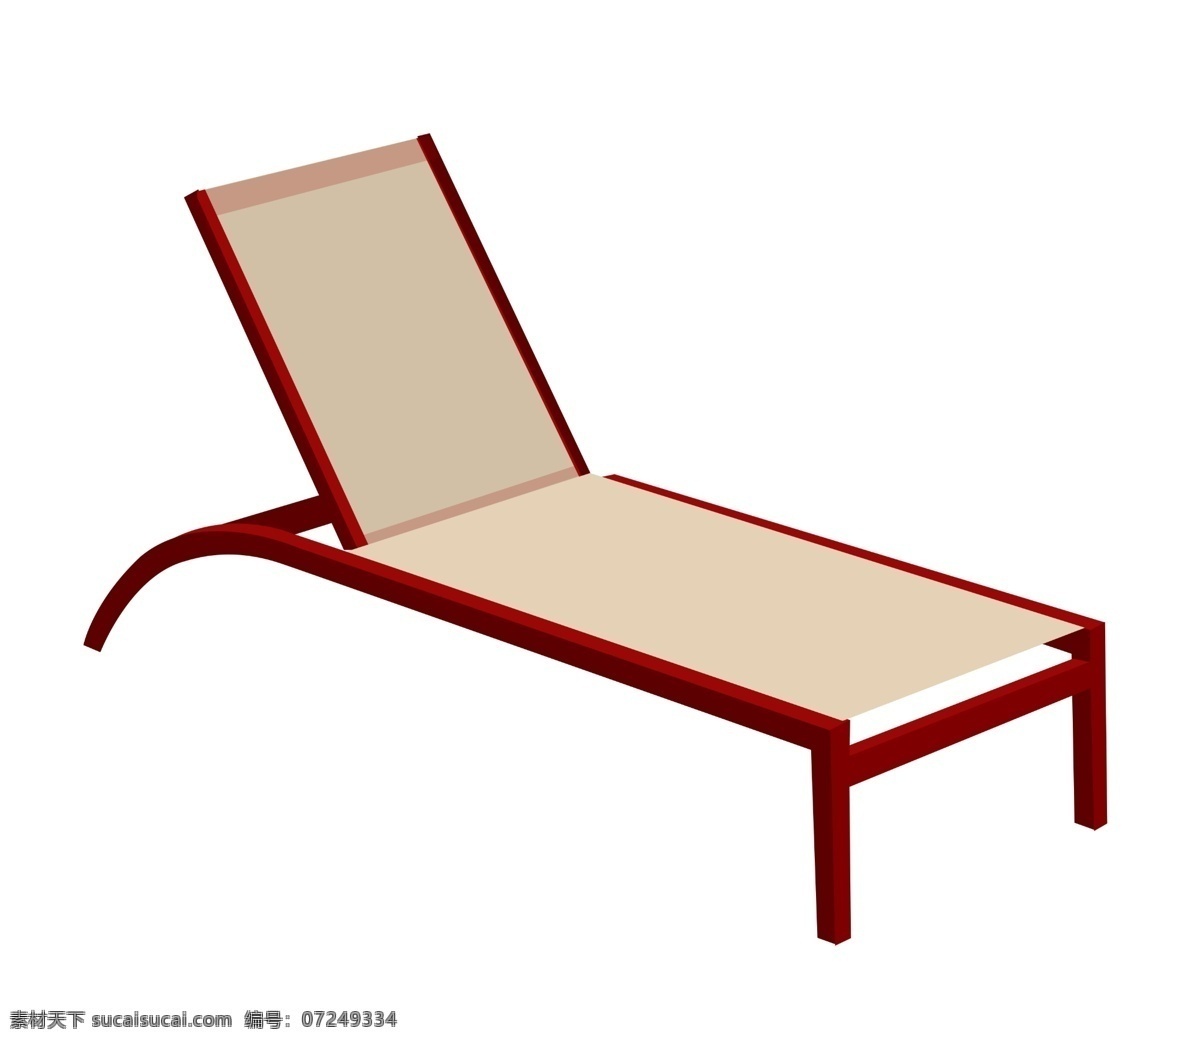 夏季红木躺椅 躺椅 座椅 家具